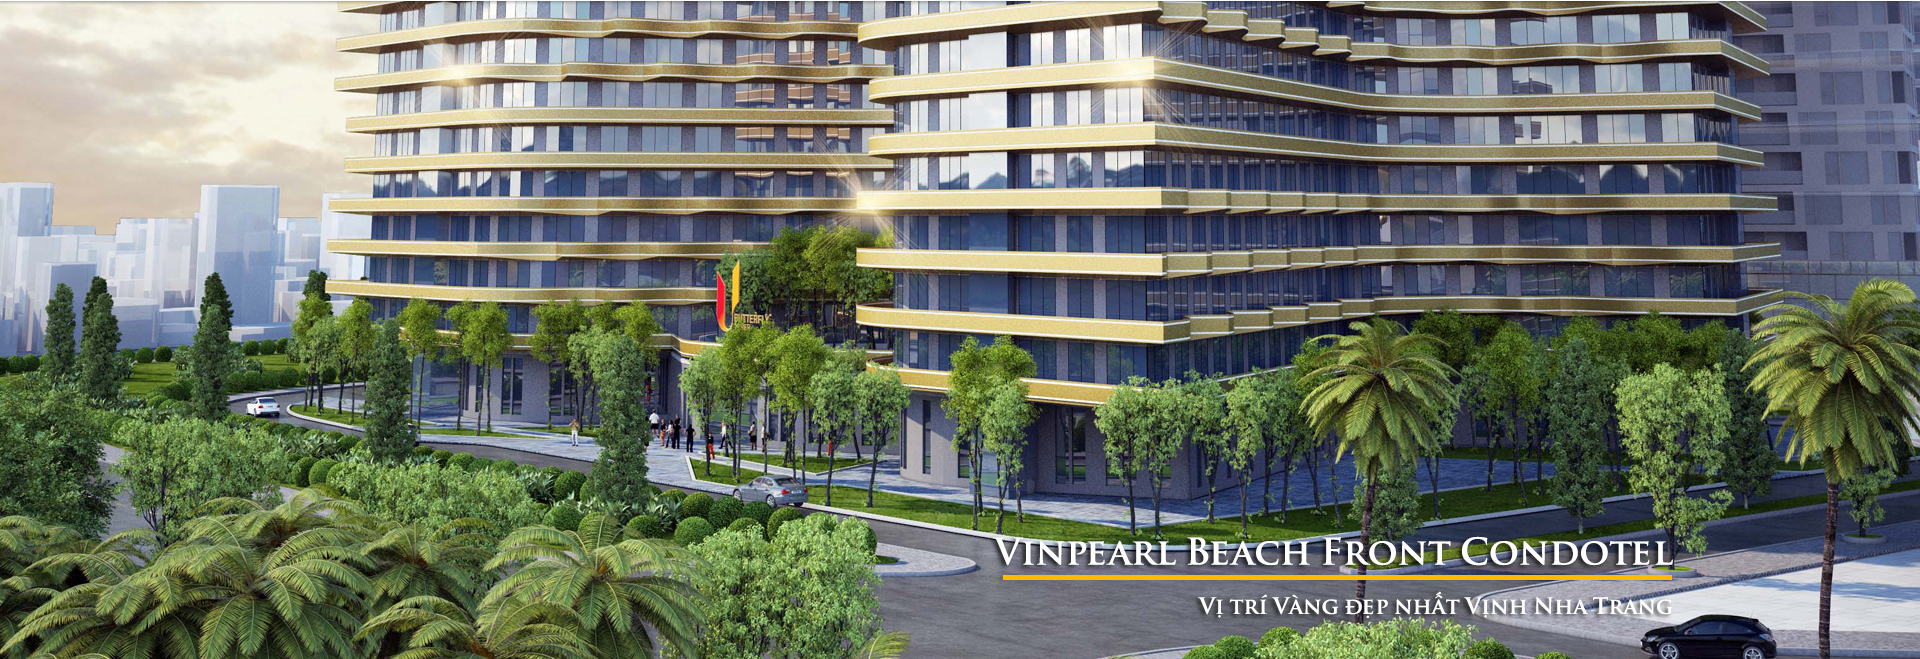 Vinpearl Beachfront Condotel Nha Trang :sản phẩm vàng tại vị trí đắc địa, sở hữu cơ hội sinh lời đặc biệt tới 10%/năm cùng ưu đãi vay 65% giá trị căn hộ